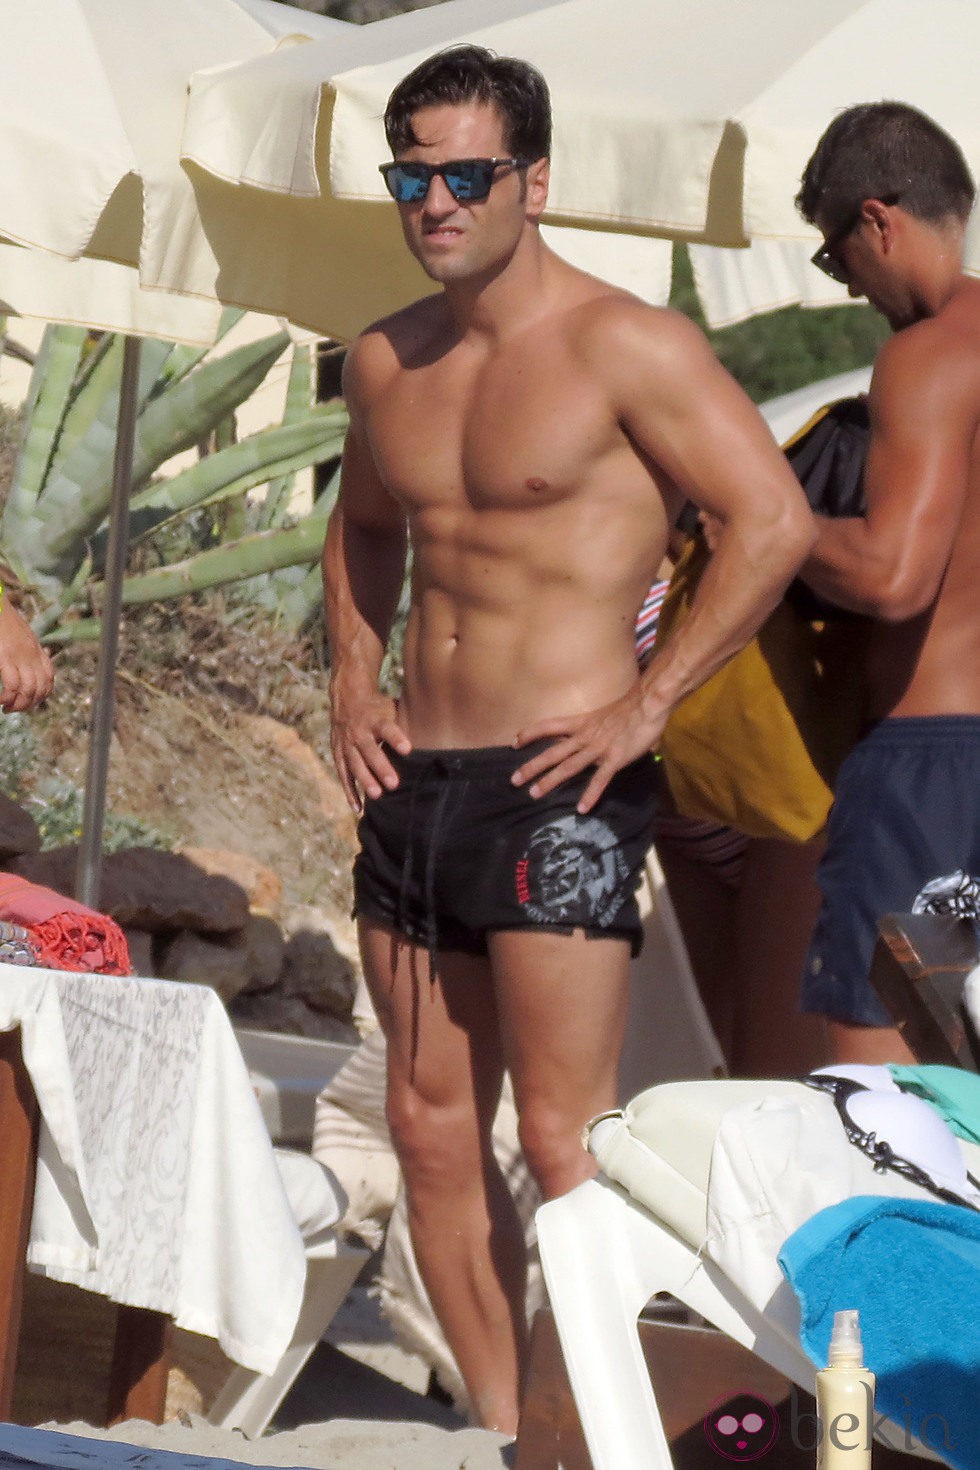 David Bustamante con el torso desnudo en Ibiza